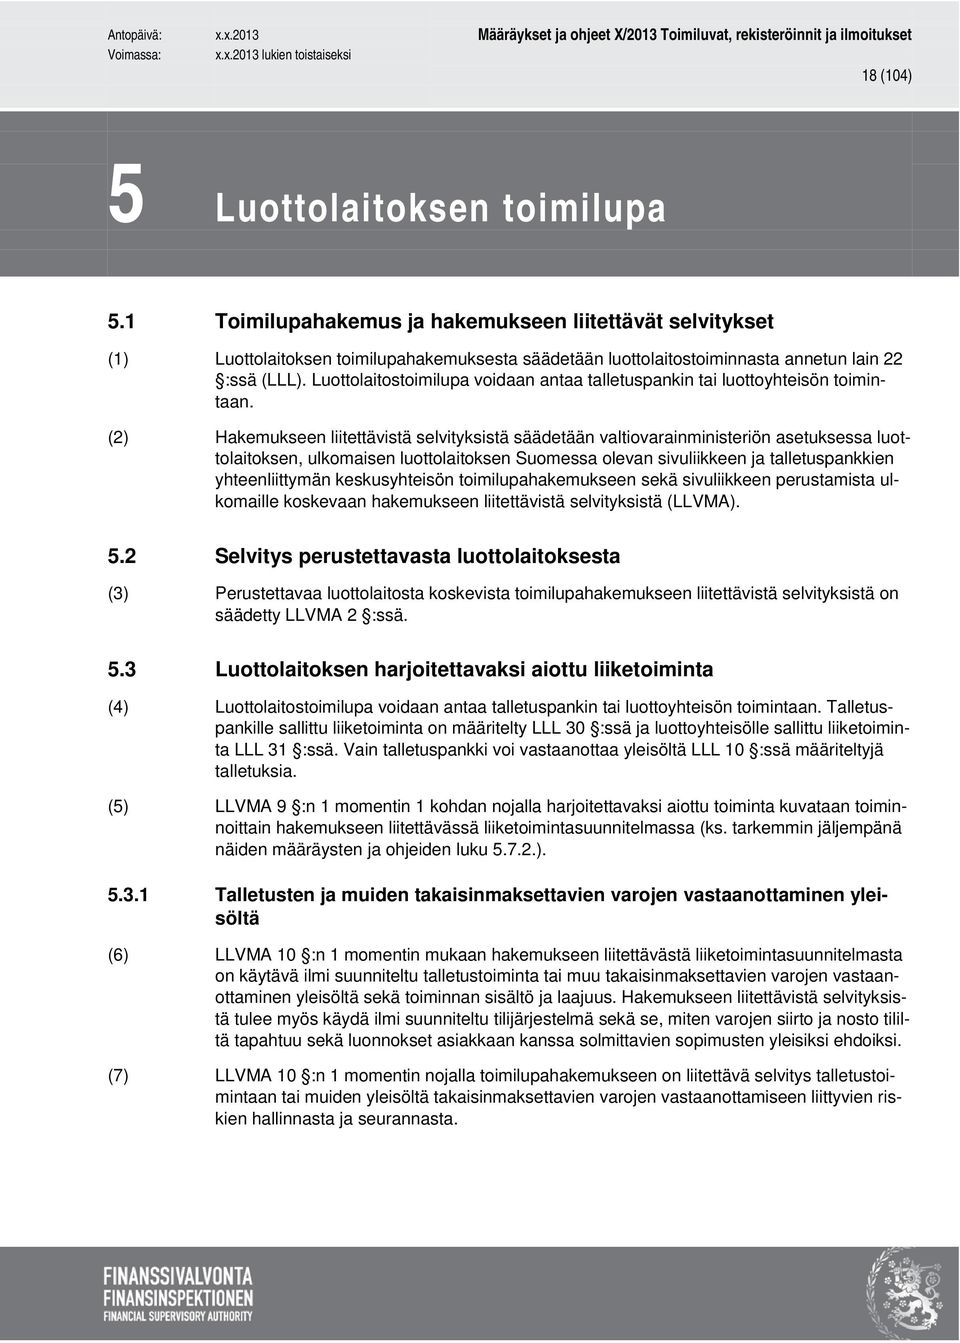 (2) Hakemukseen liitettävistä selvityksistä säädetään valtiovarainministeriön asetuksessa luottolaitoksen, ulkomaisen luottolaitoksen Suomessa olevan sivuliikkeen ja talletuspankkien yhteenliittymän